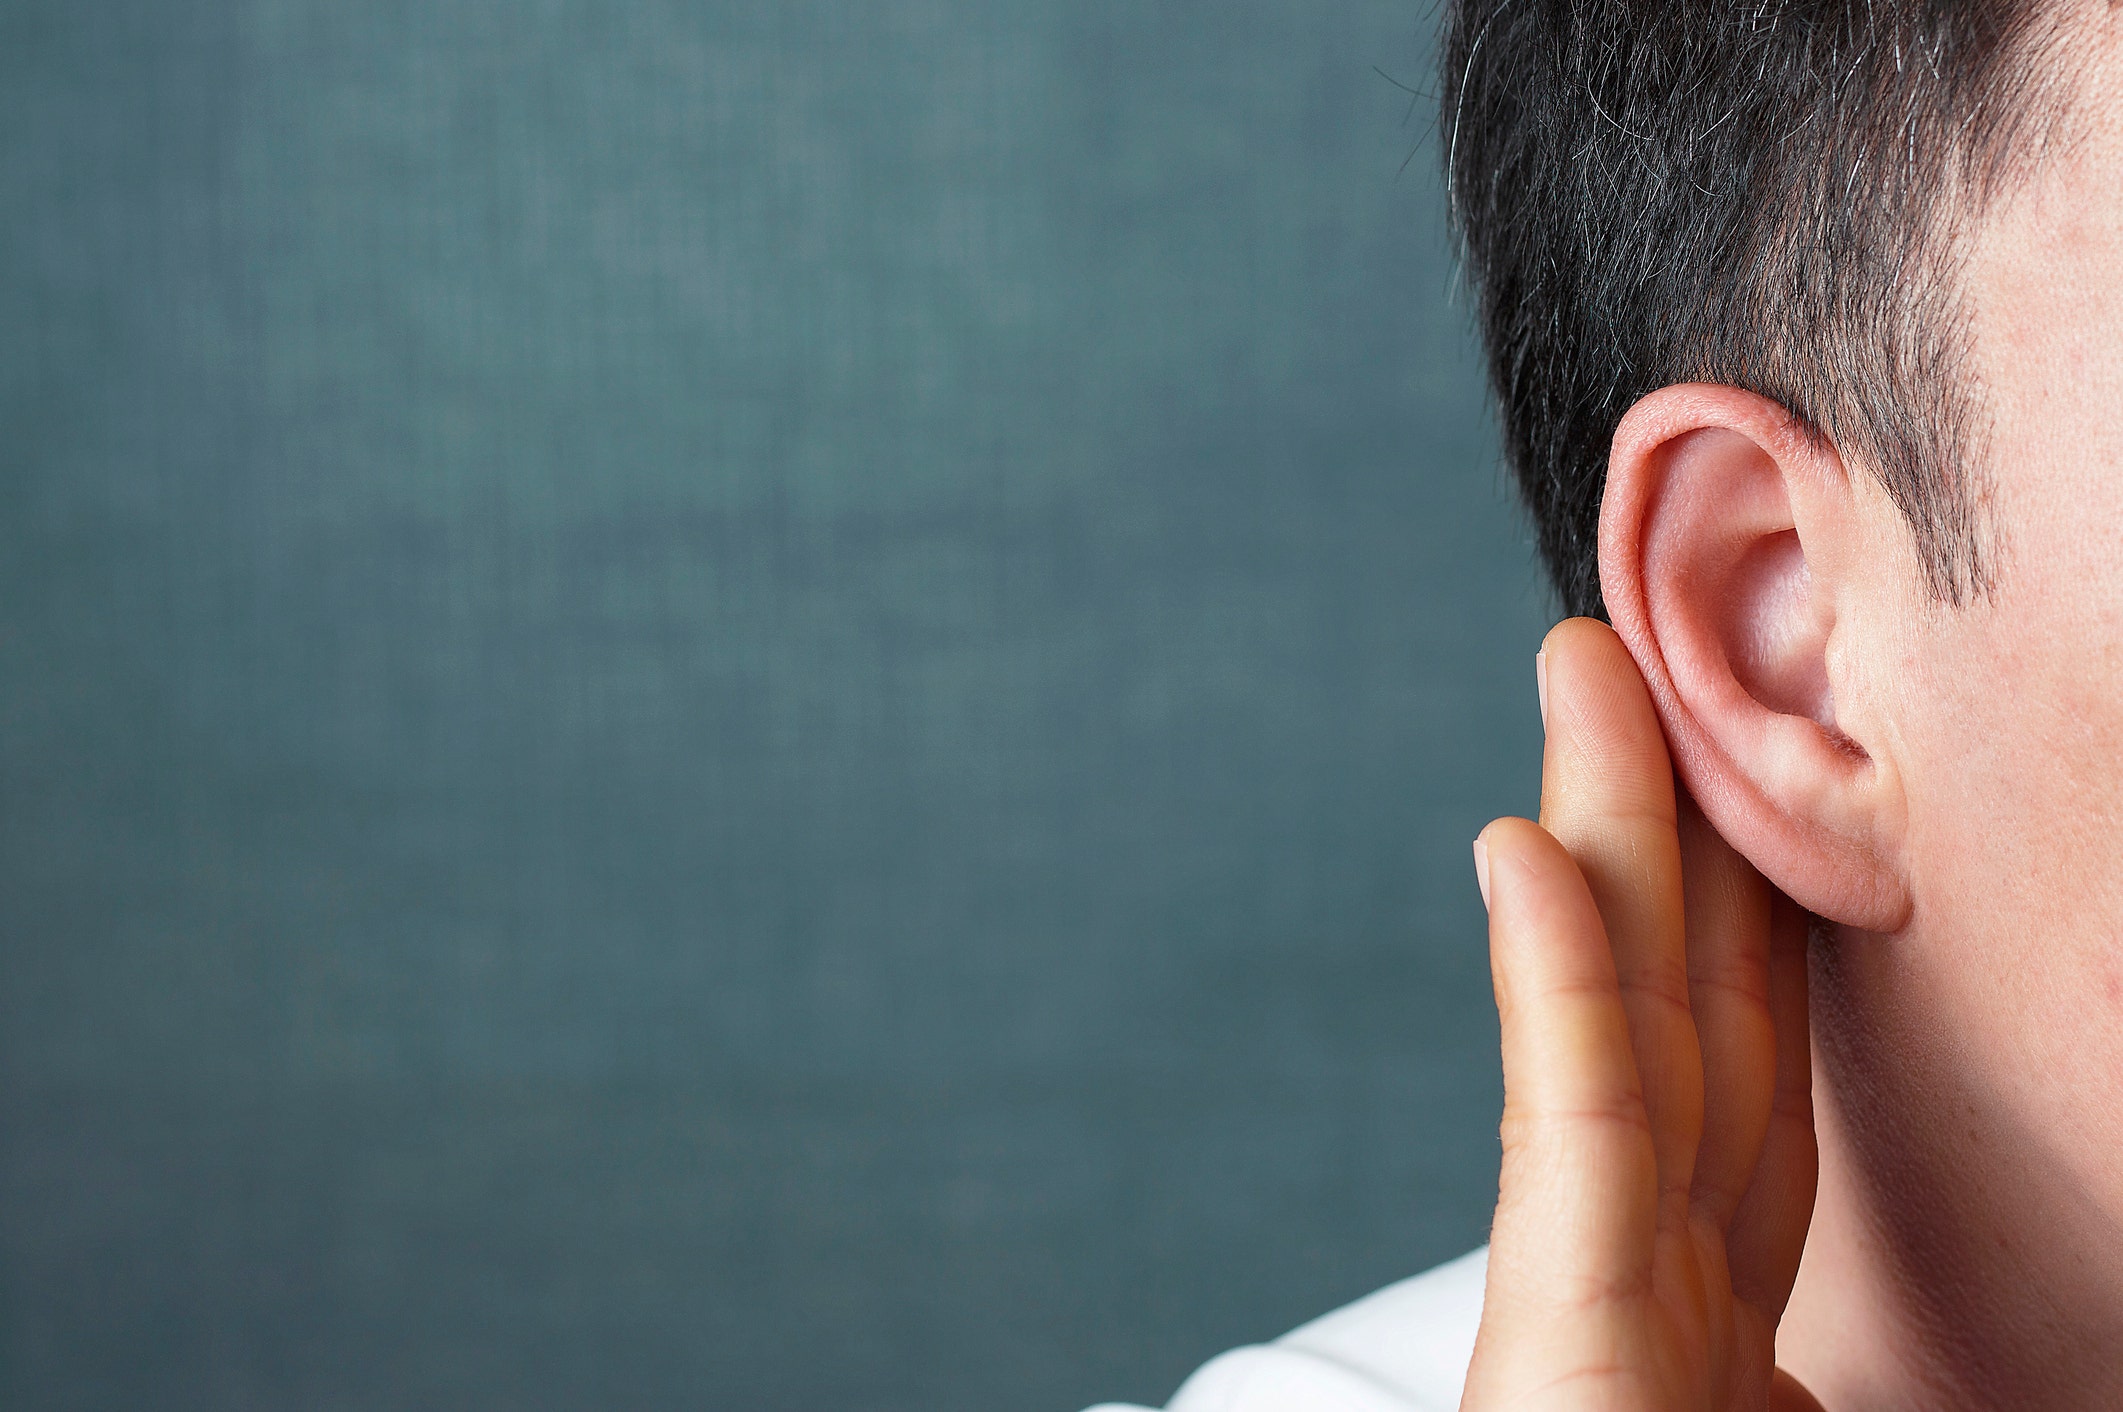 وجدت دراسة أن ضعف السمع قد يسبب الخرف